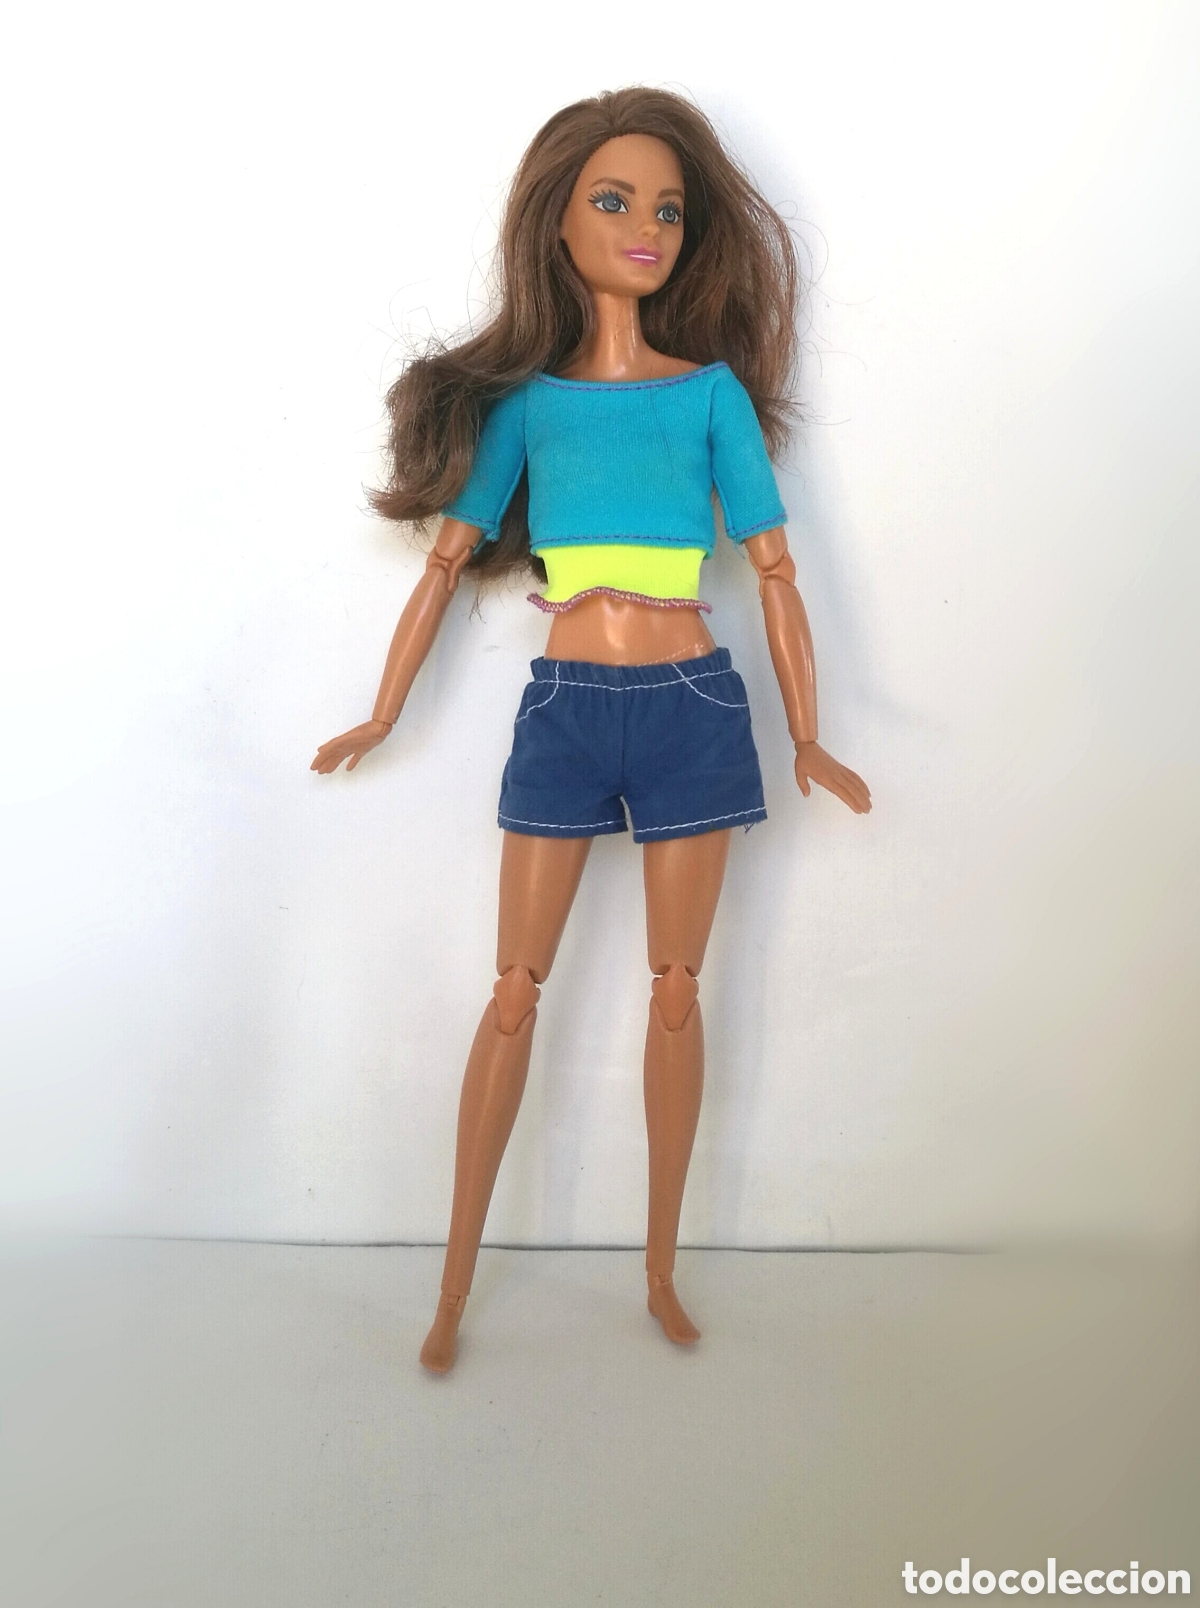 Boneca Barbie Made To Move - Yoga- 03 Modelos .